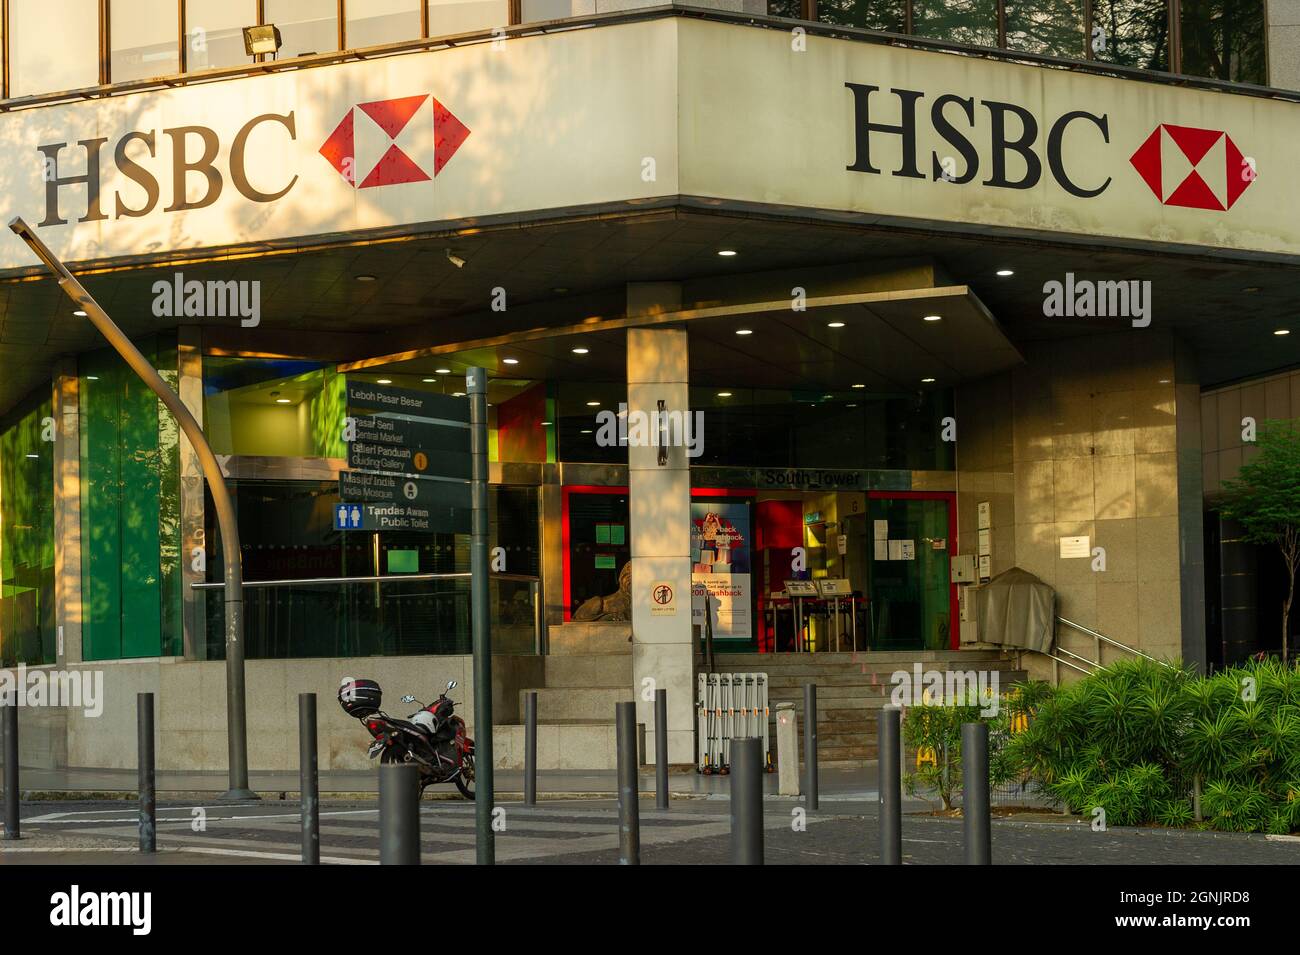 HSBC Malaysia at sunset, Chinatown, Kuala Lumpur Stock Photo